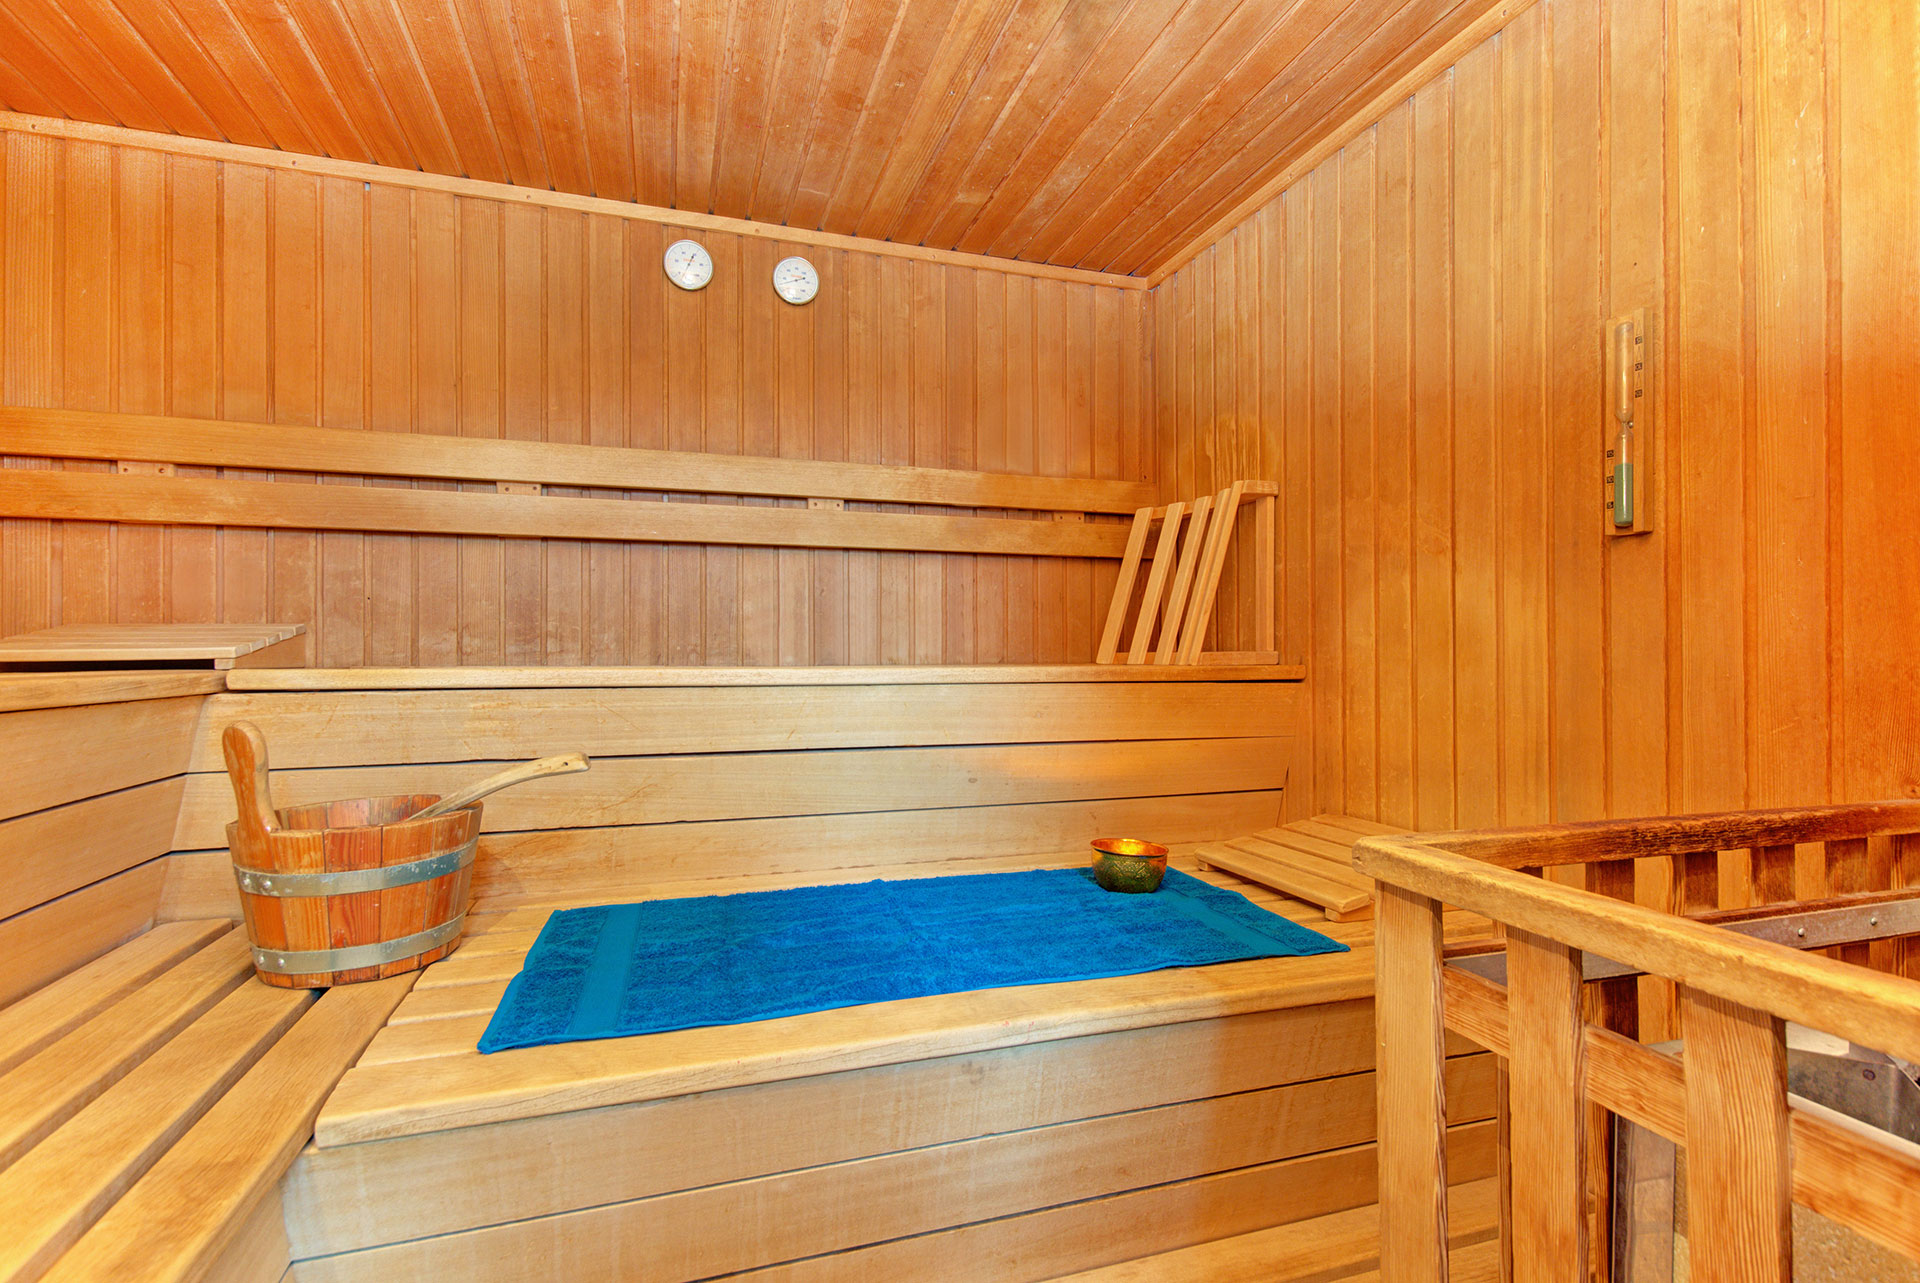 hotelfoto sauna mit tuerkisenem handtuch und teelicht